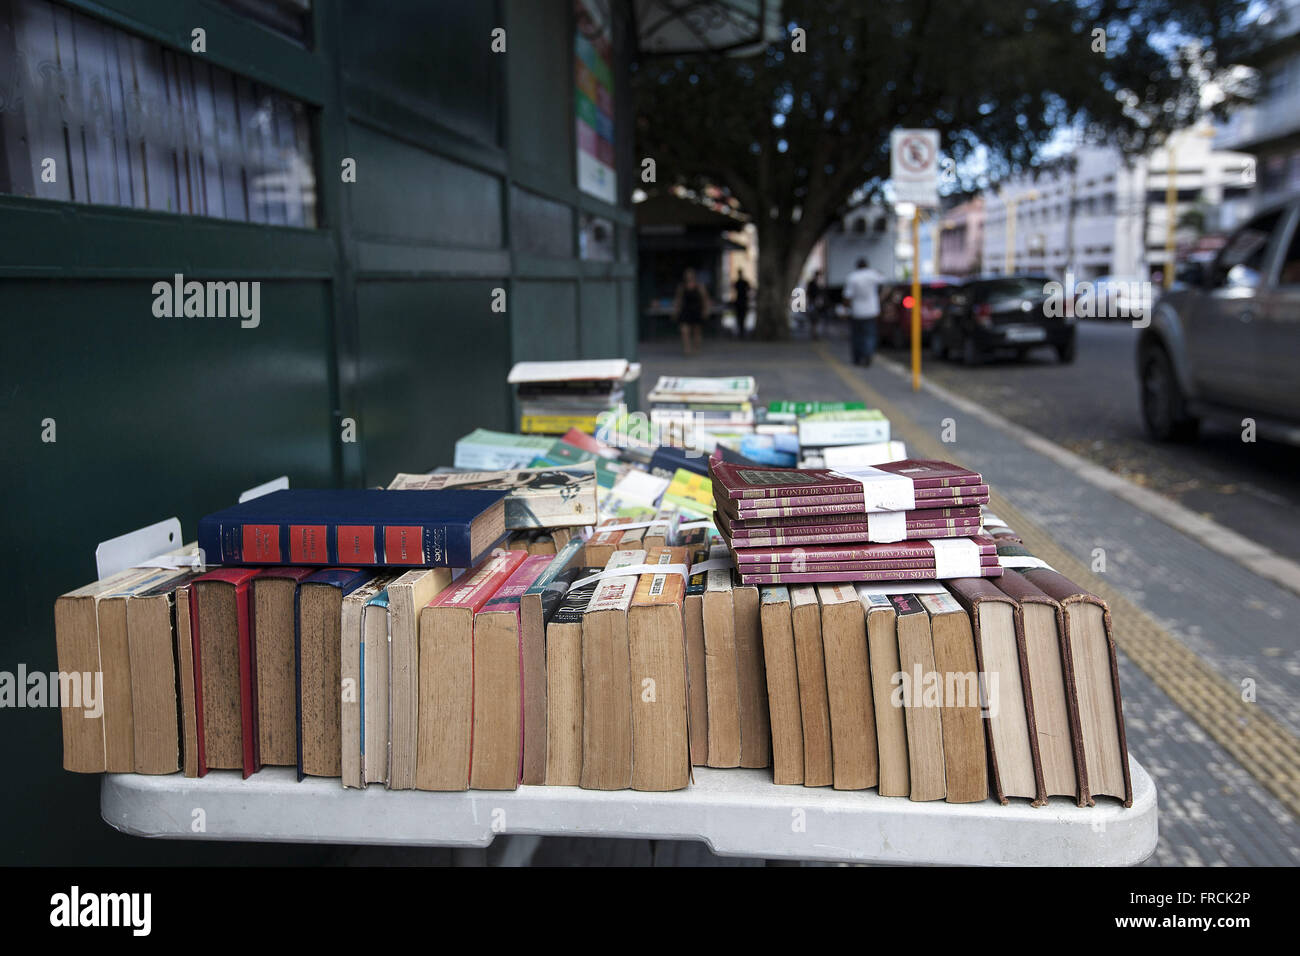 Venda de Livros Usados Em Banca Na Praça Heliodóro Balbi Stockfoto